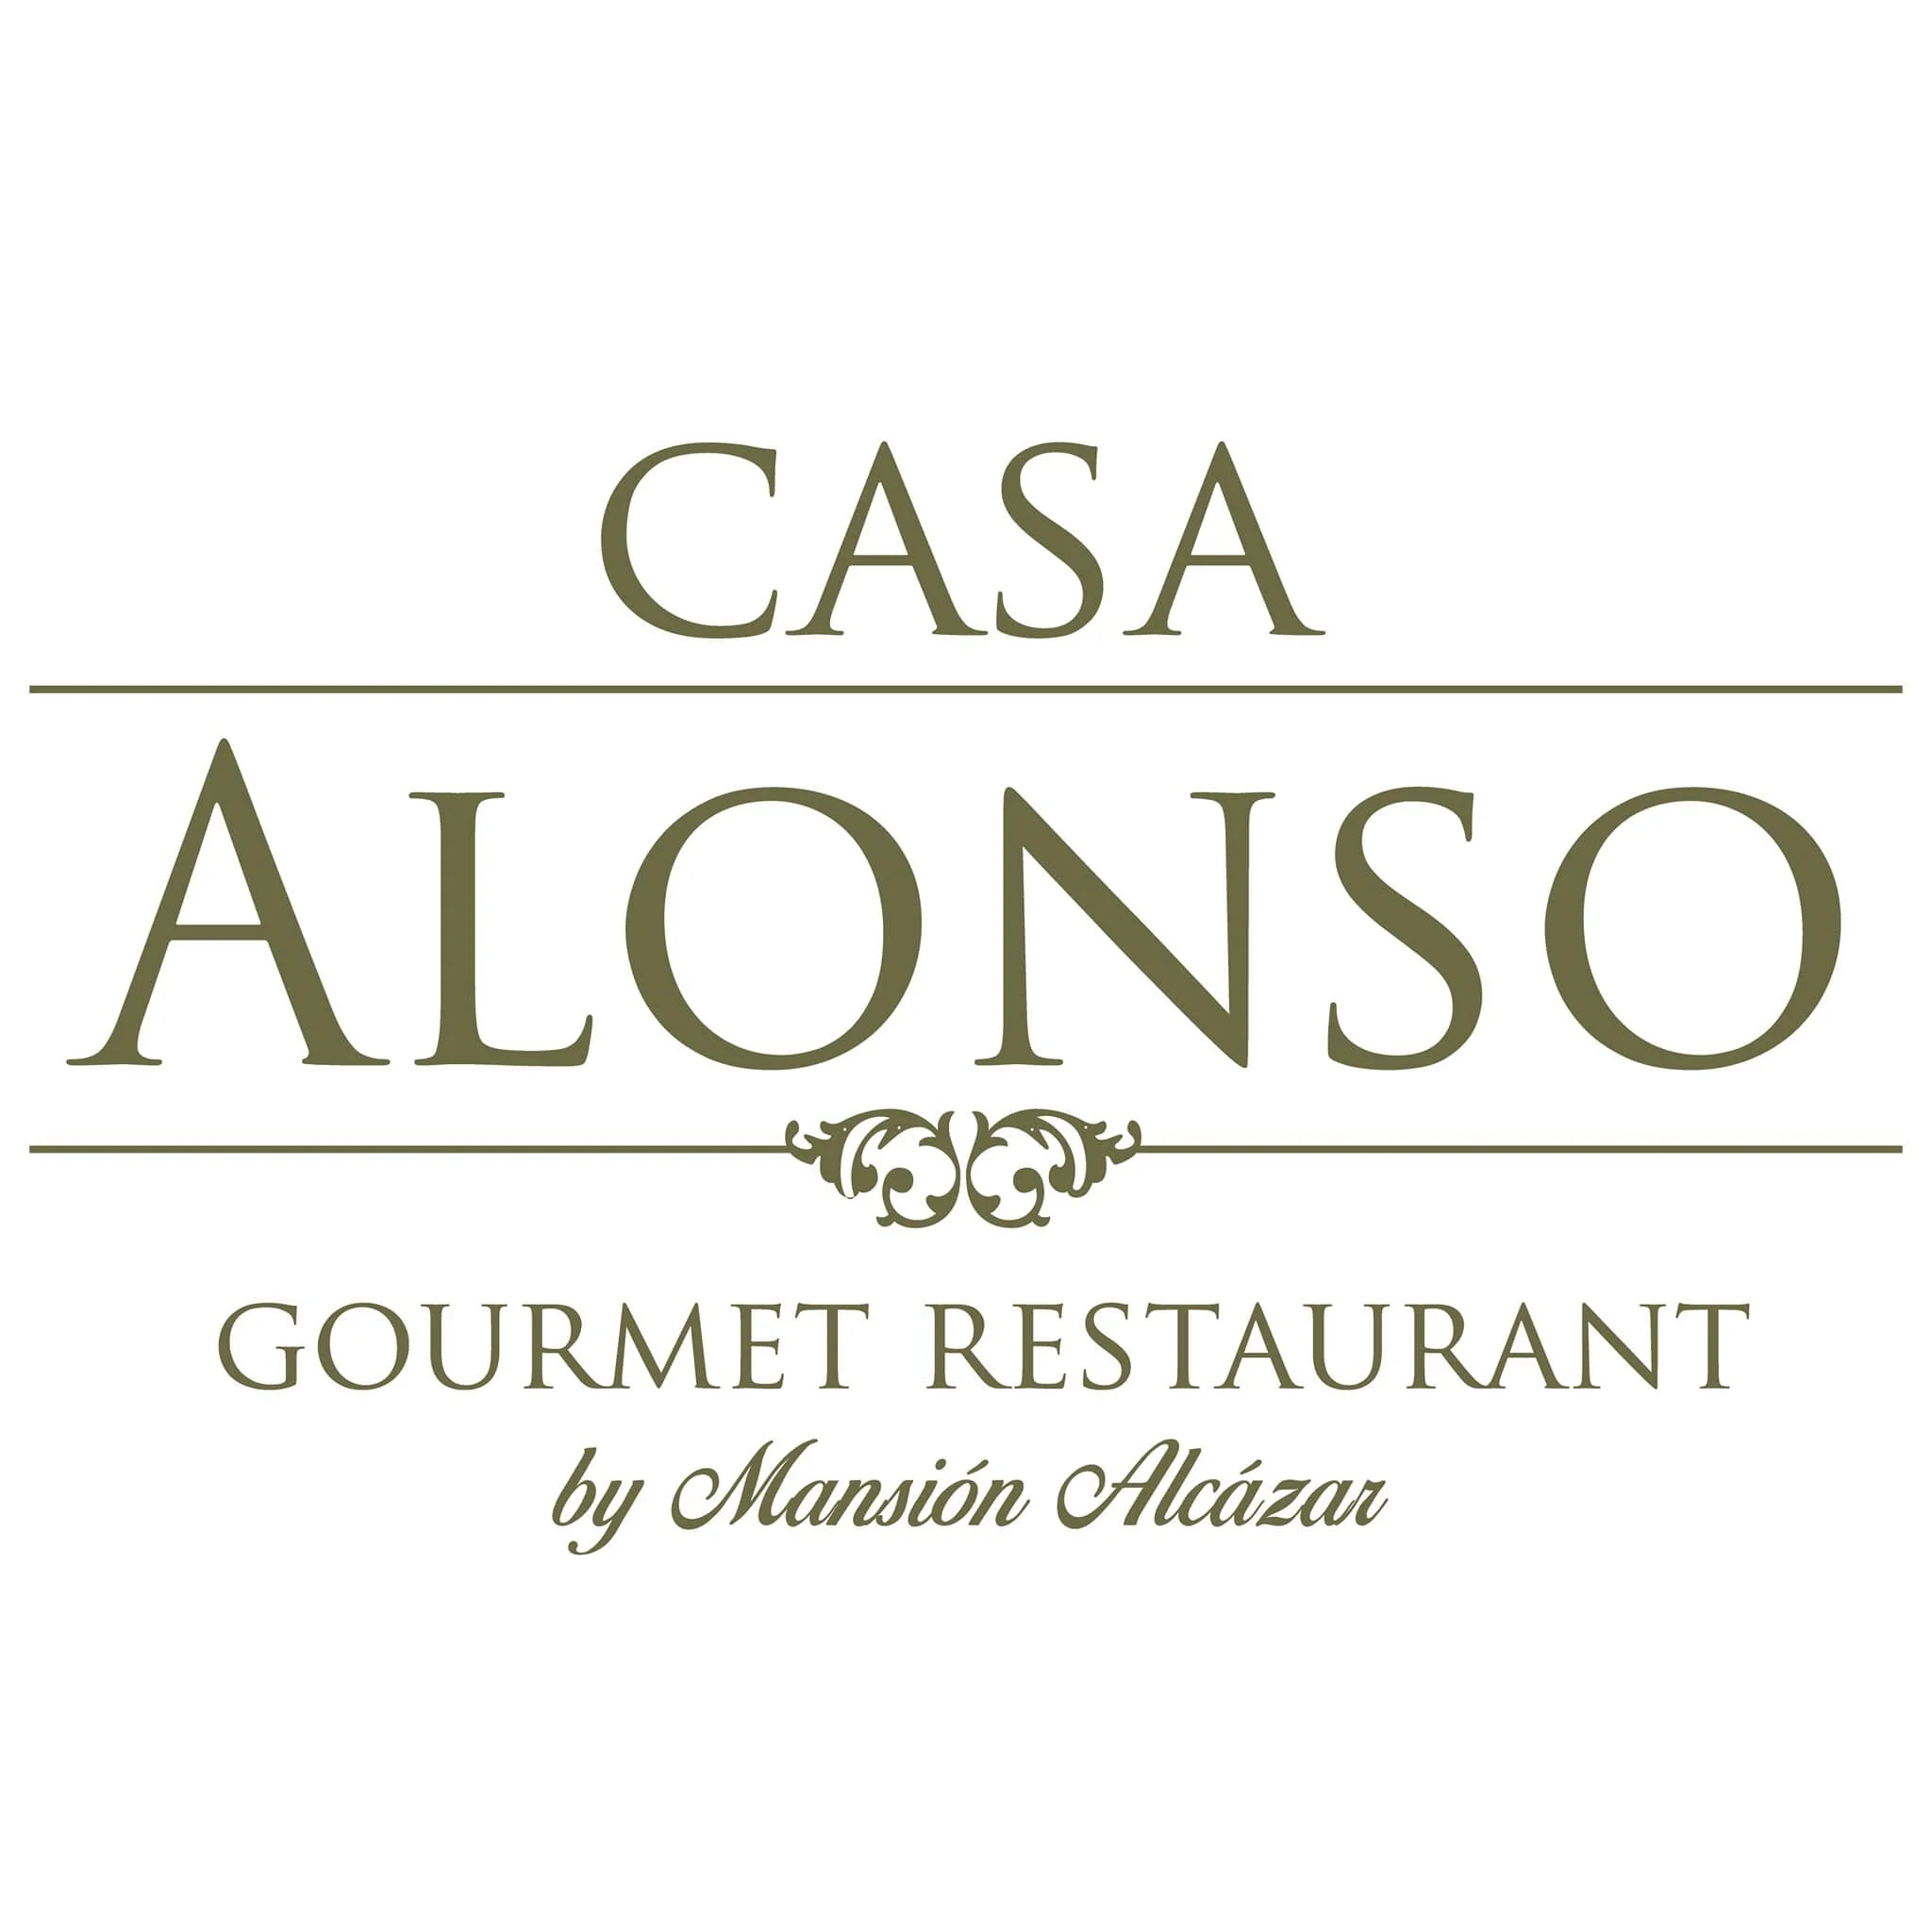 Casa Alonso Gourmet Restaurant-4378